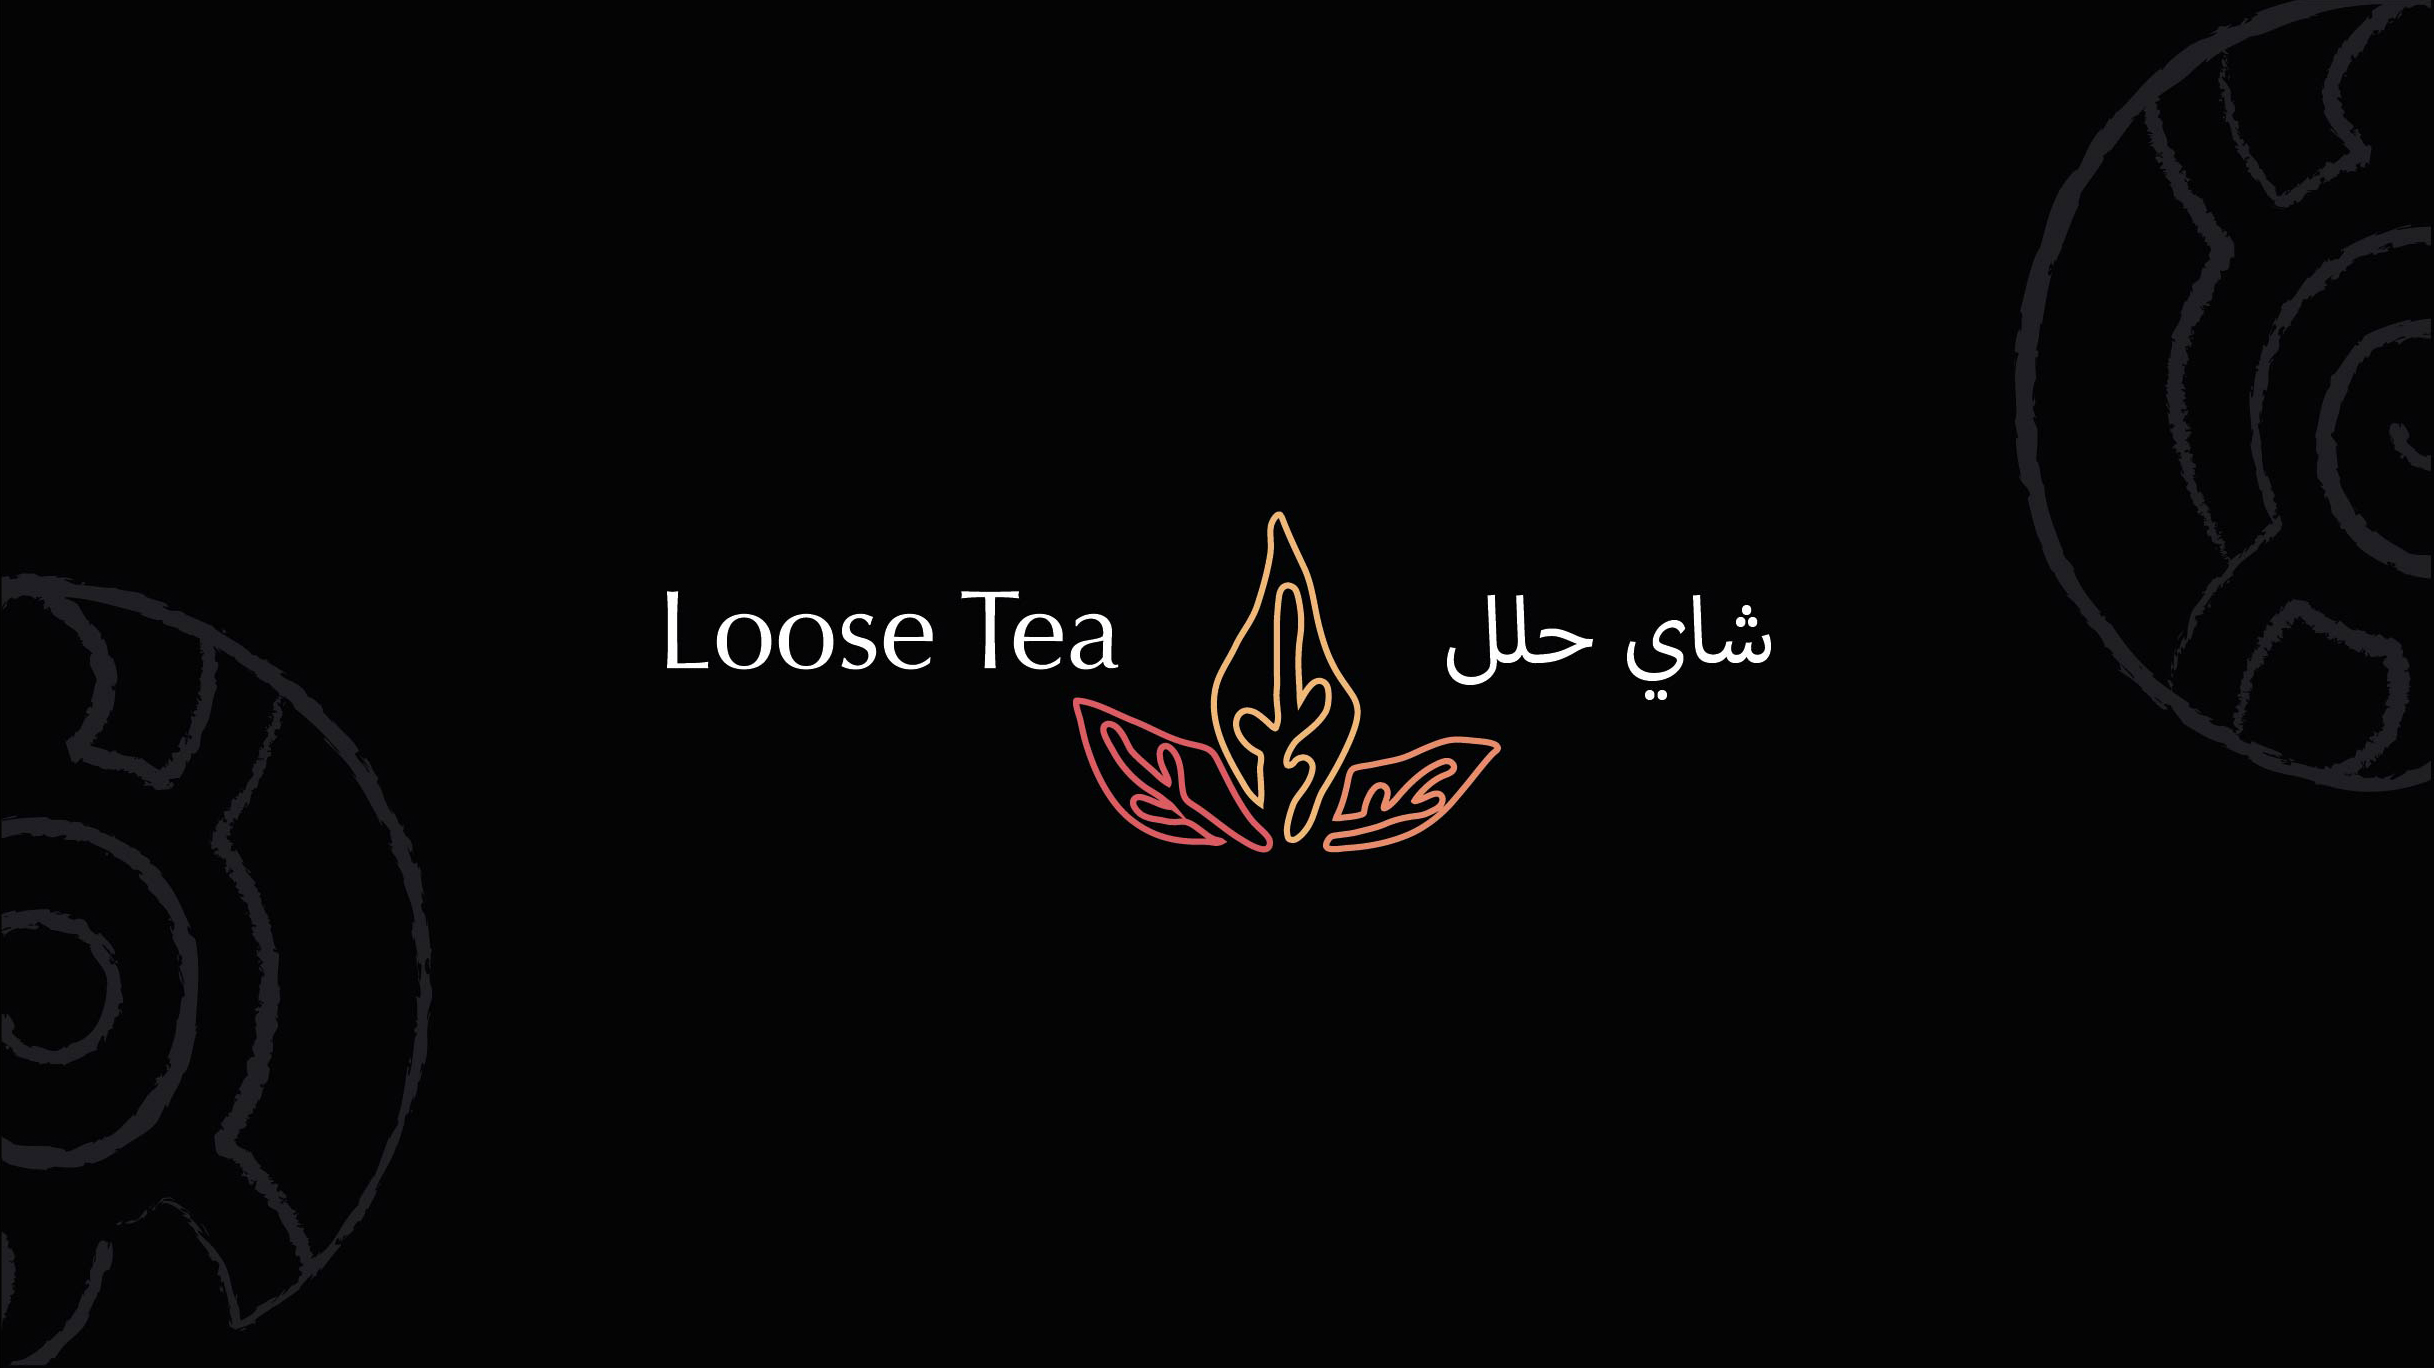 Loose Tea